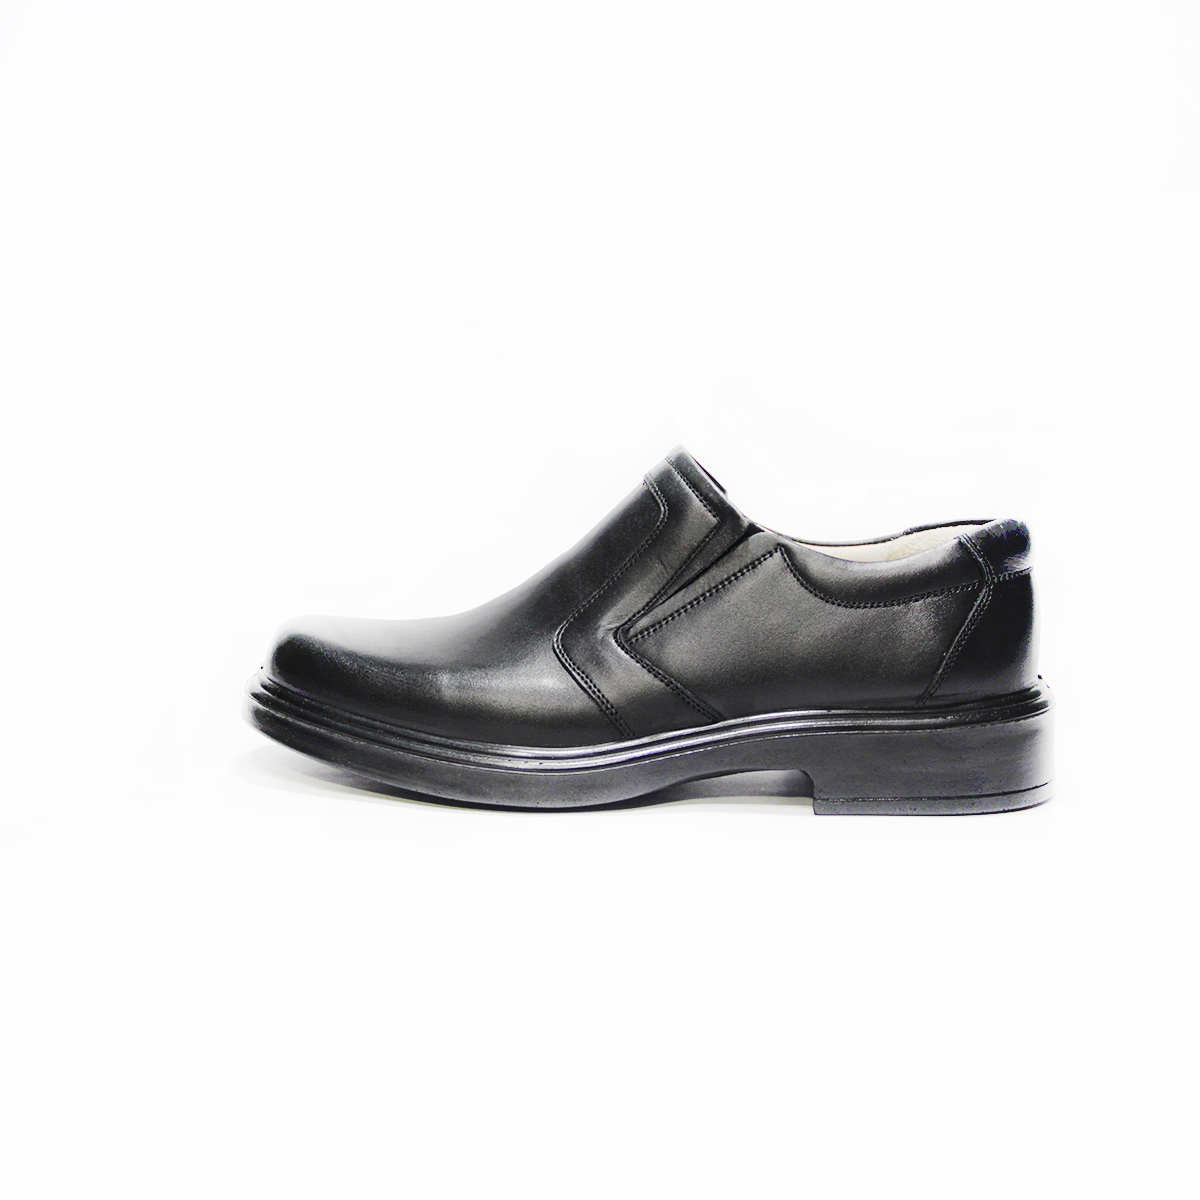 کفش مردانه فرزین کد SEKM 0022 رنگ مشکی -  - 1